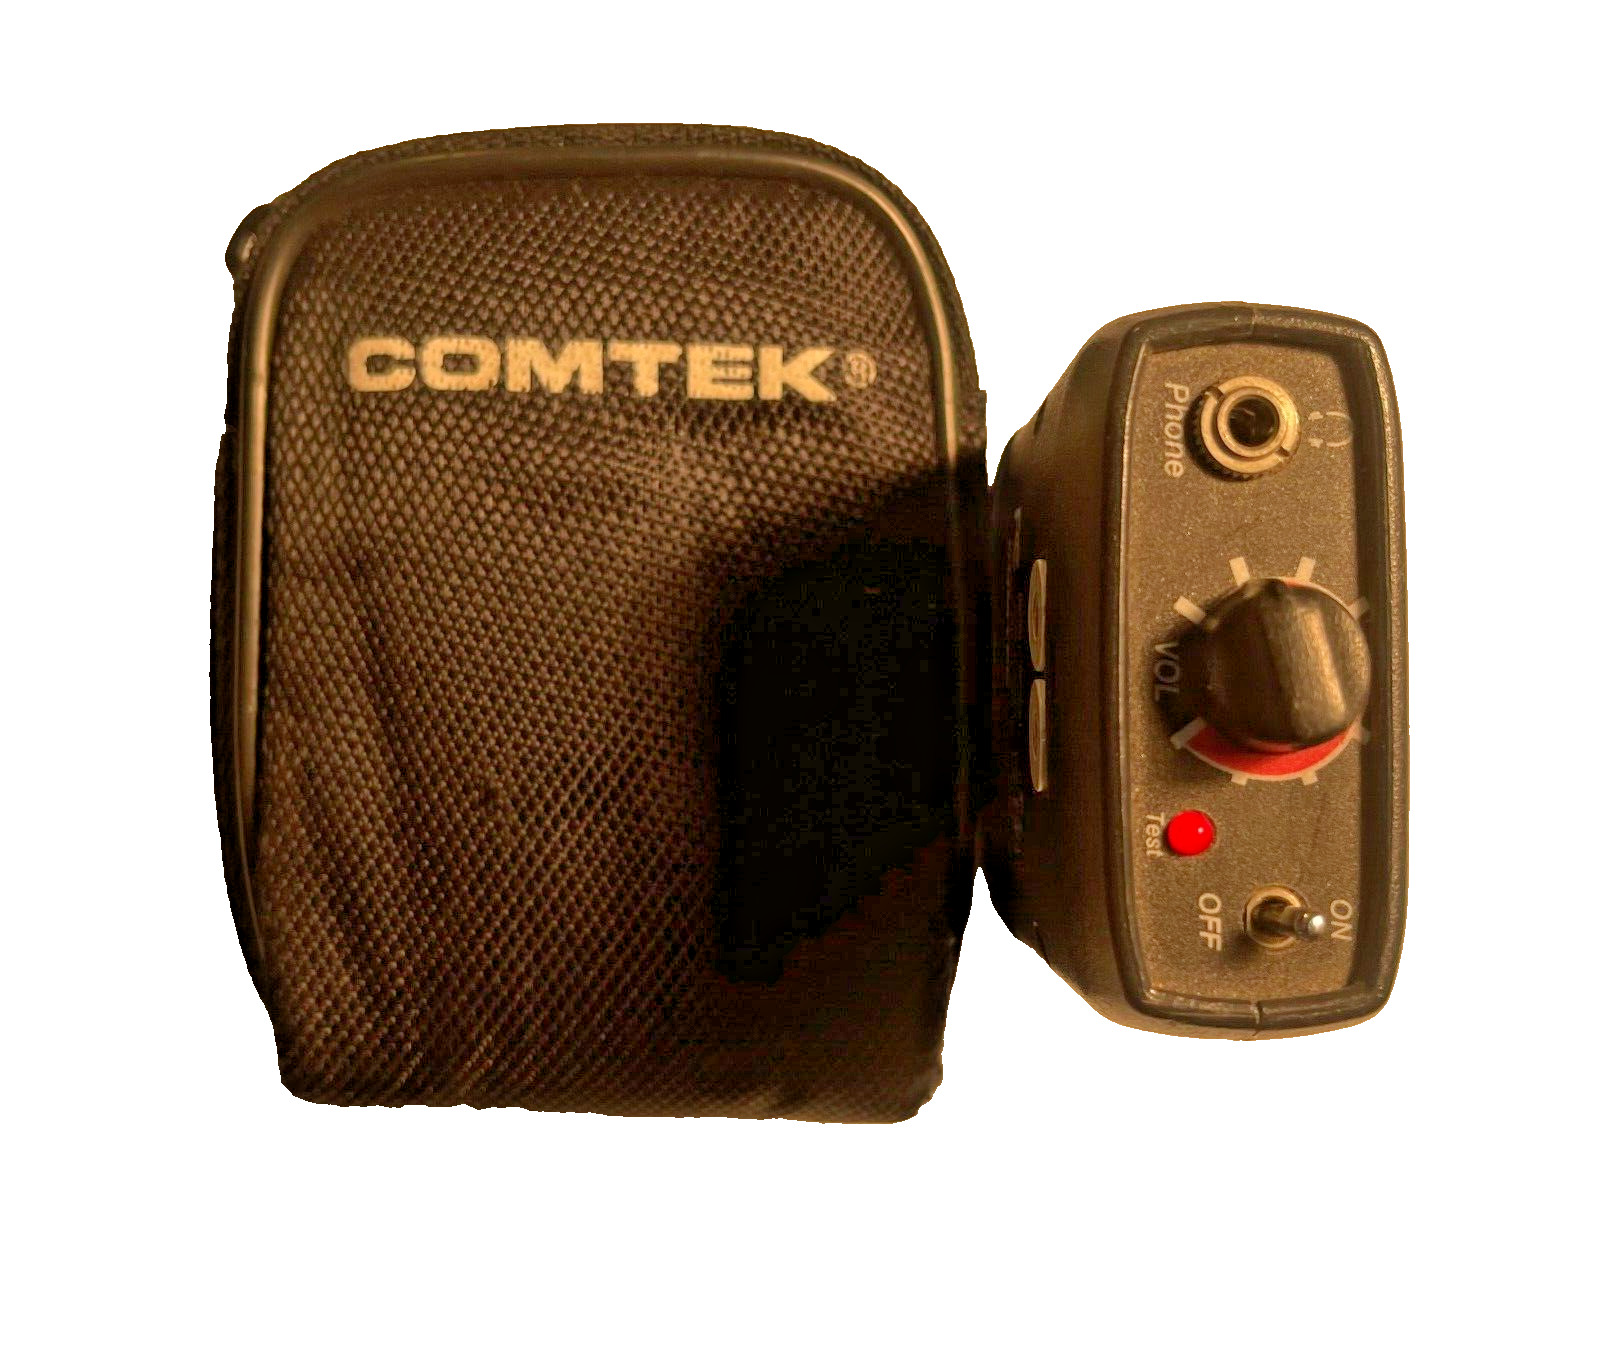 Comtek PR-216 receivers with headphones